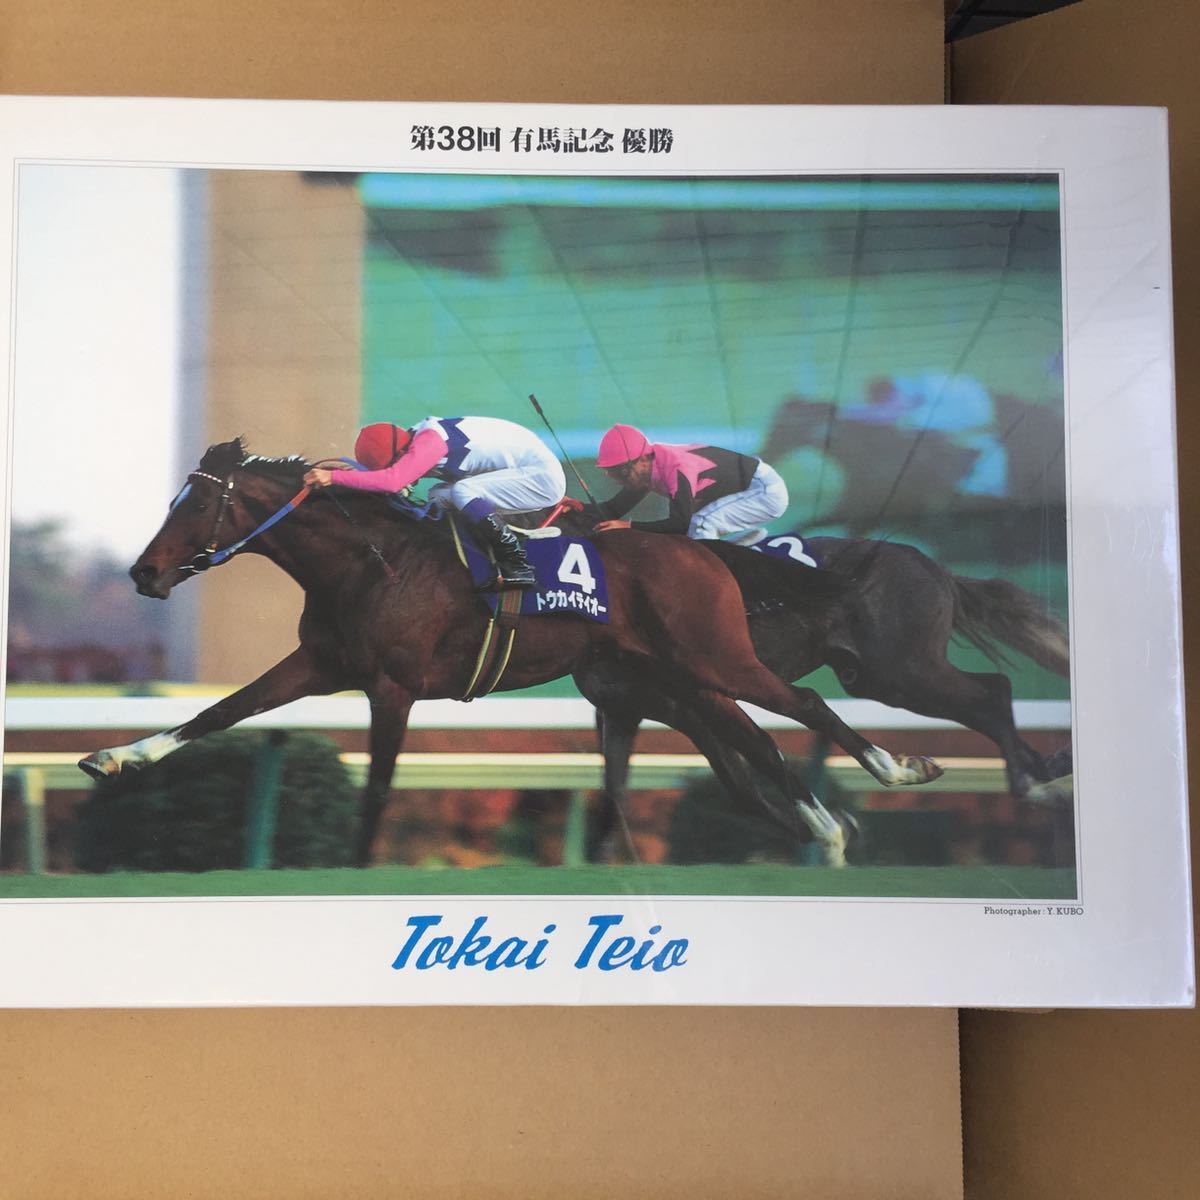 [ нераспечатанный ] no. 38 раз G1 иметь лошадь память победа Toukaiteio TOKAI TEIO скачки лошадь составная картинка JIGSAW PUZZLE 1000 деталь 1993